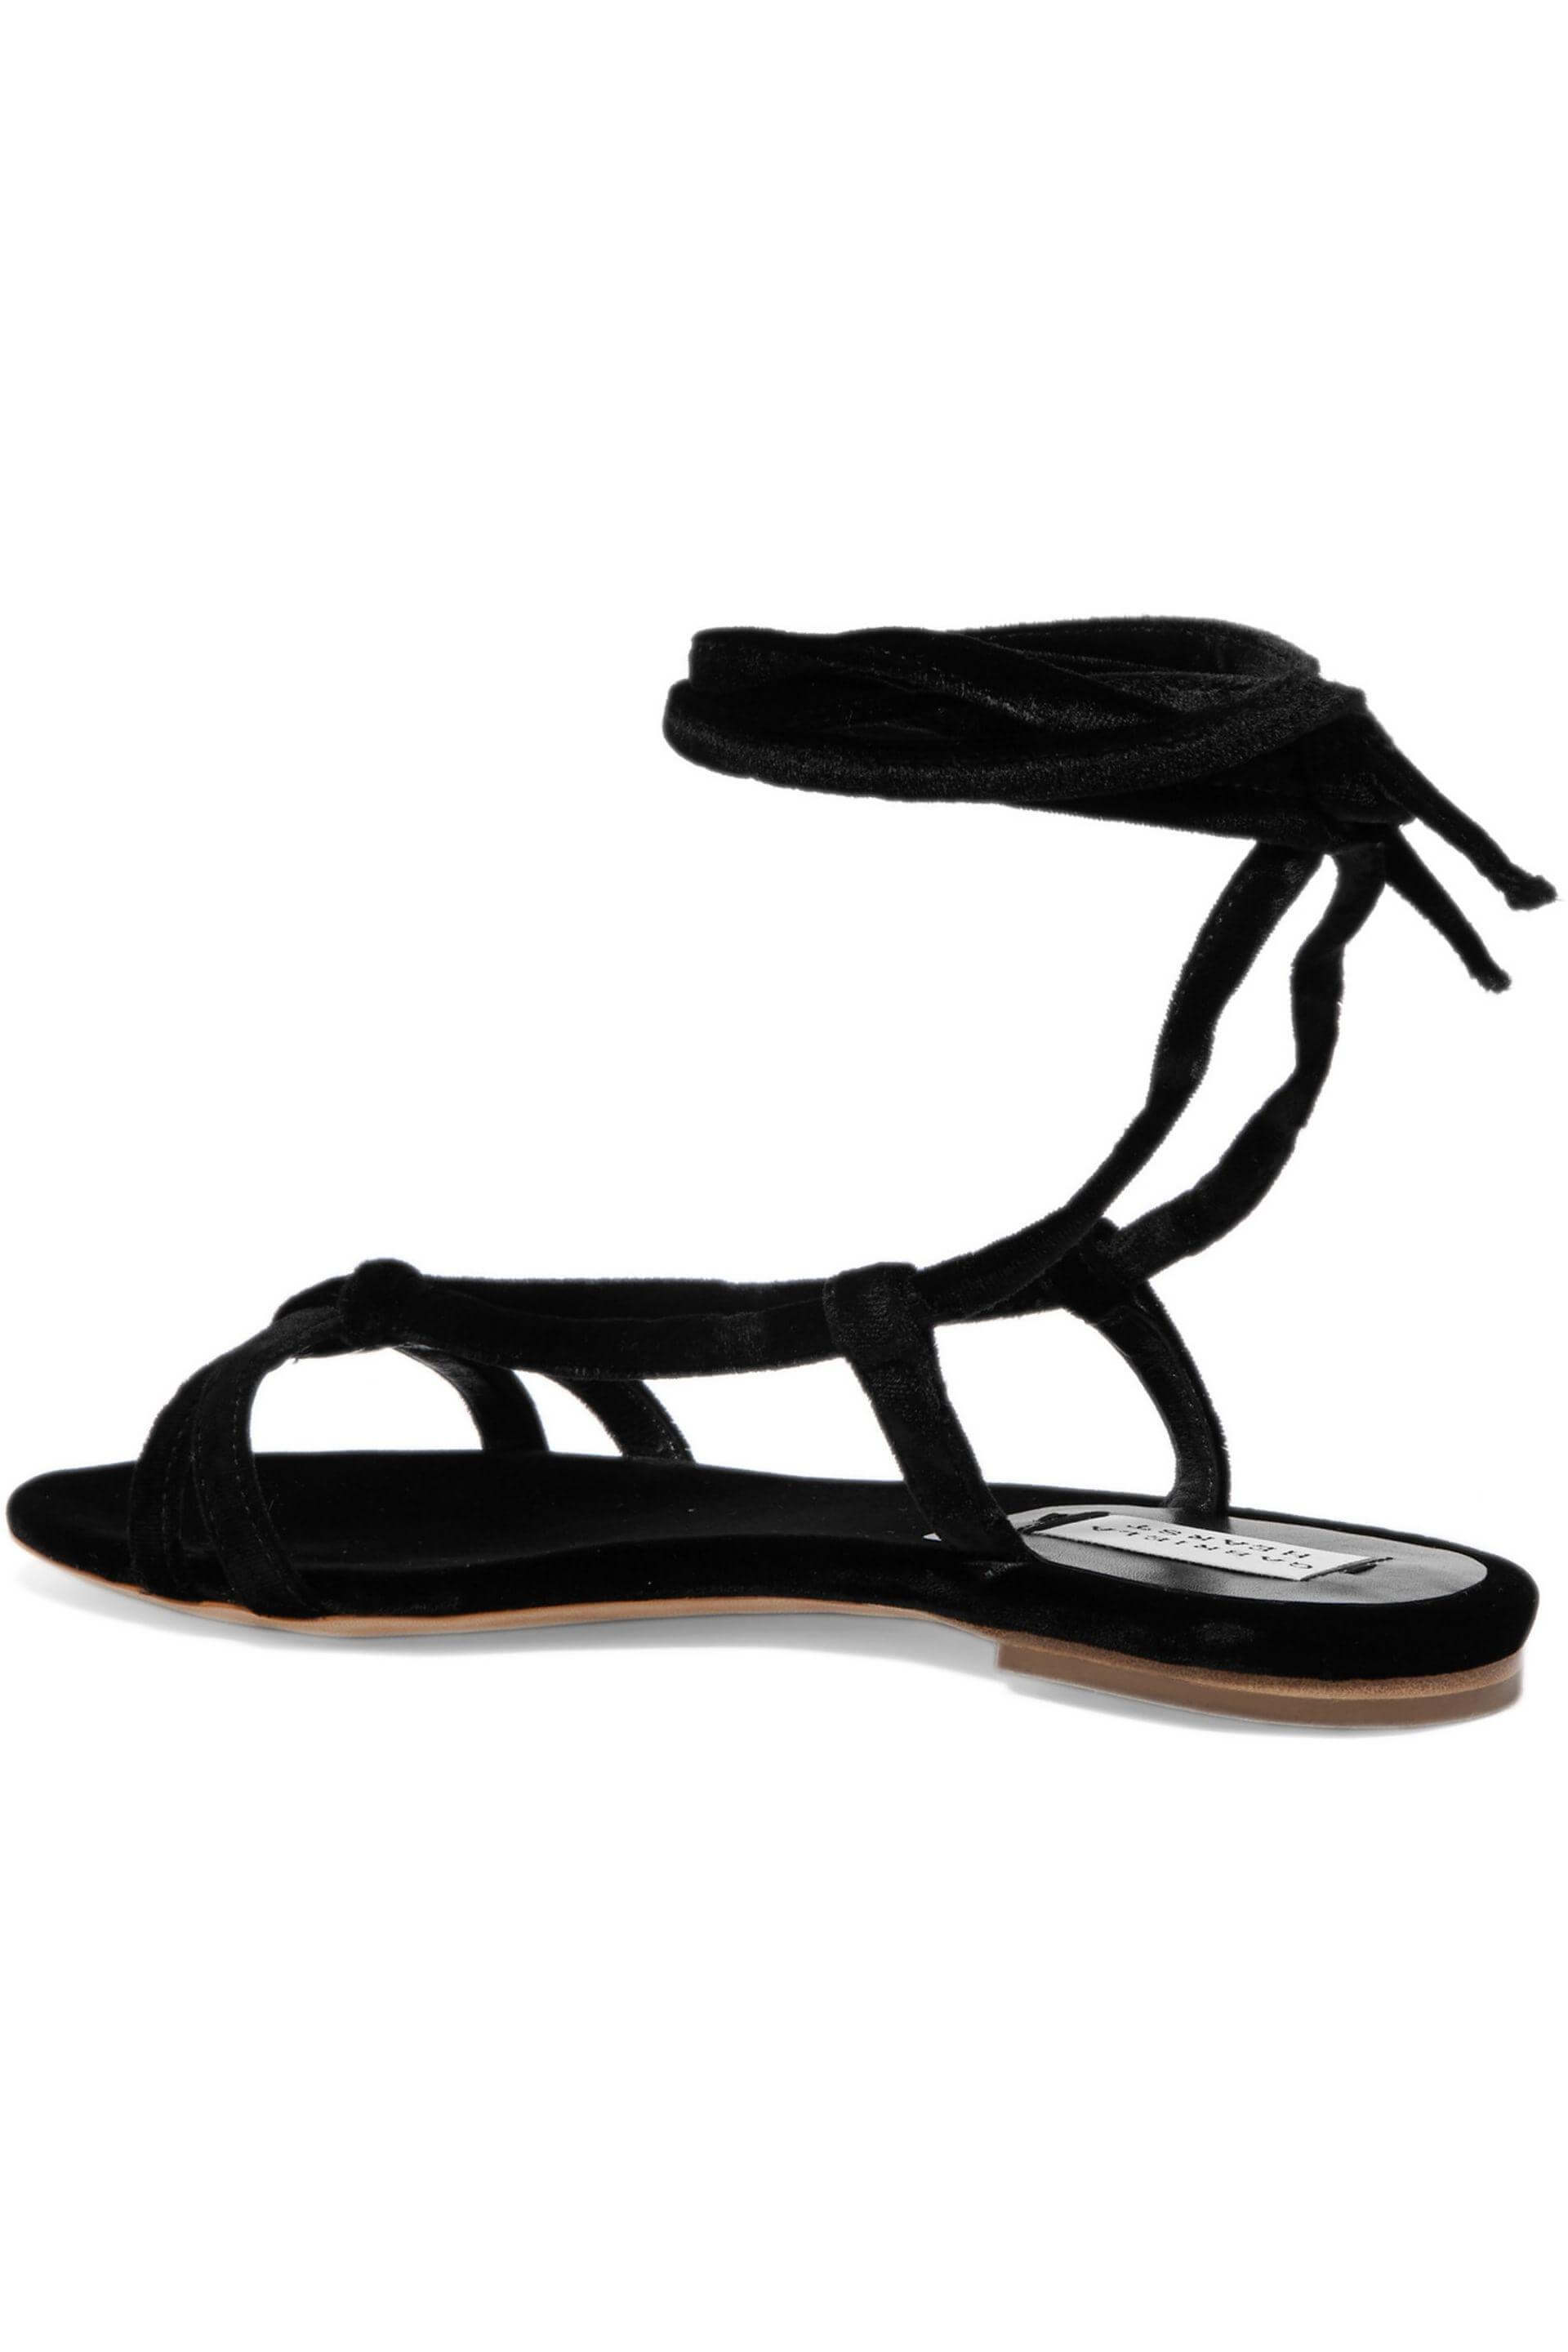 summer sandals